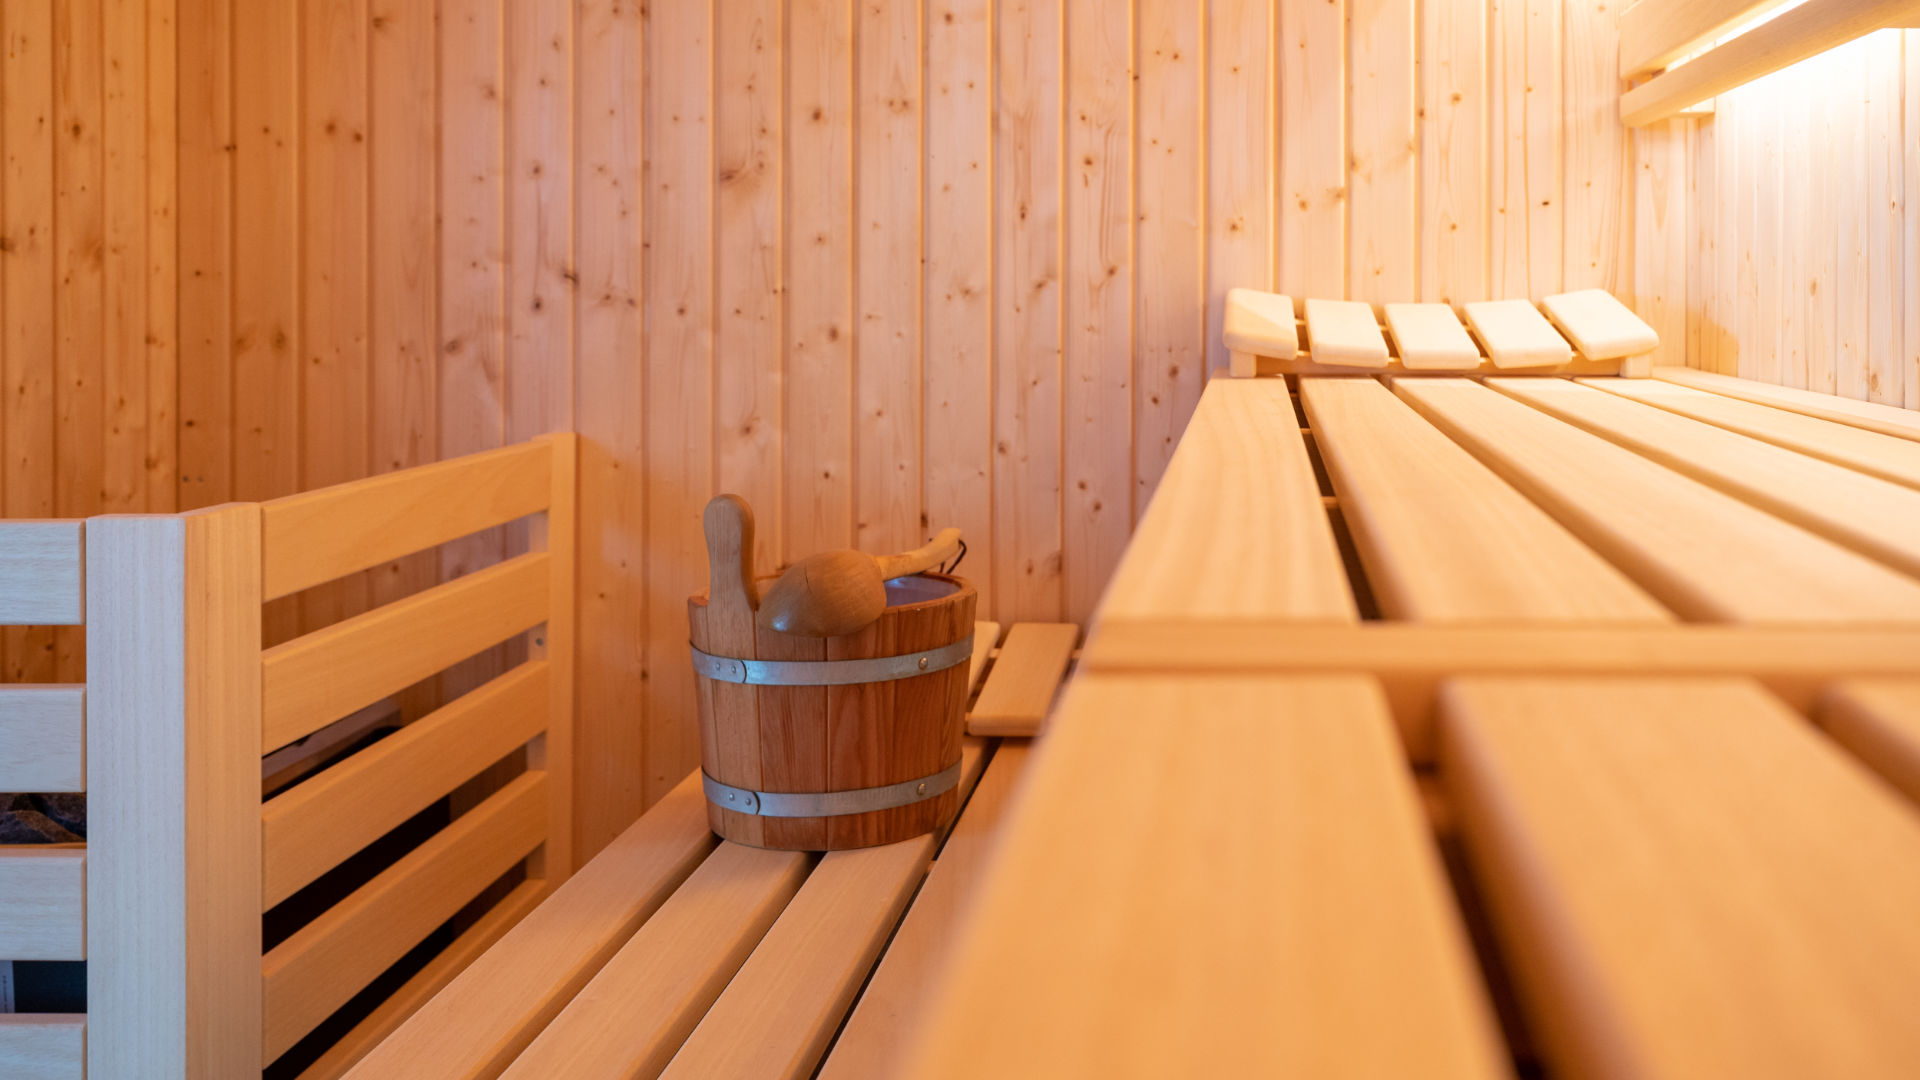 Wellnessbereich - Finische Sauna, Innenaufnahme mit Aufgussutensilien